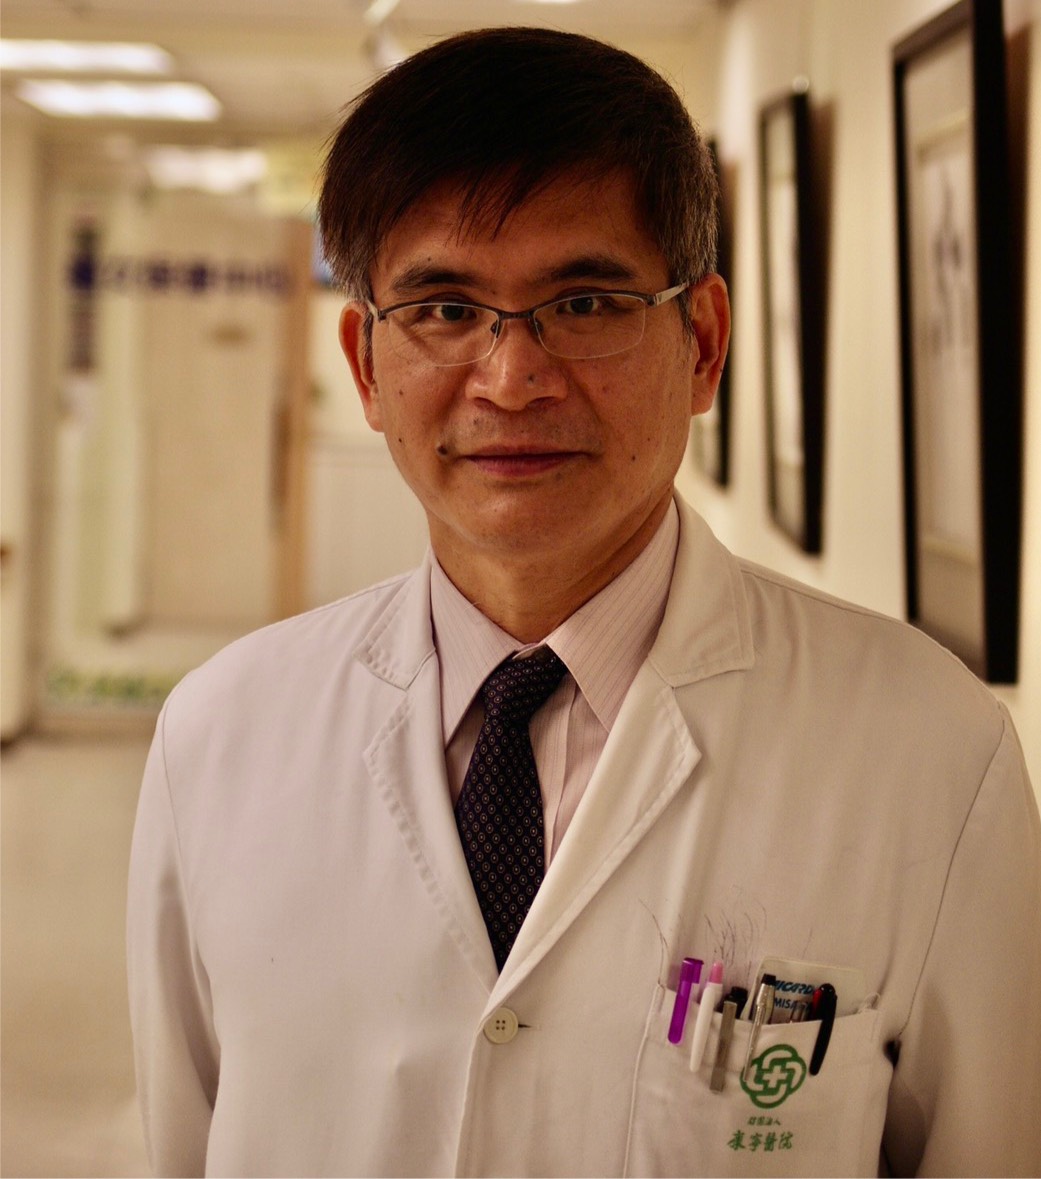 簡宏志 醫師